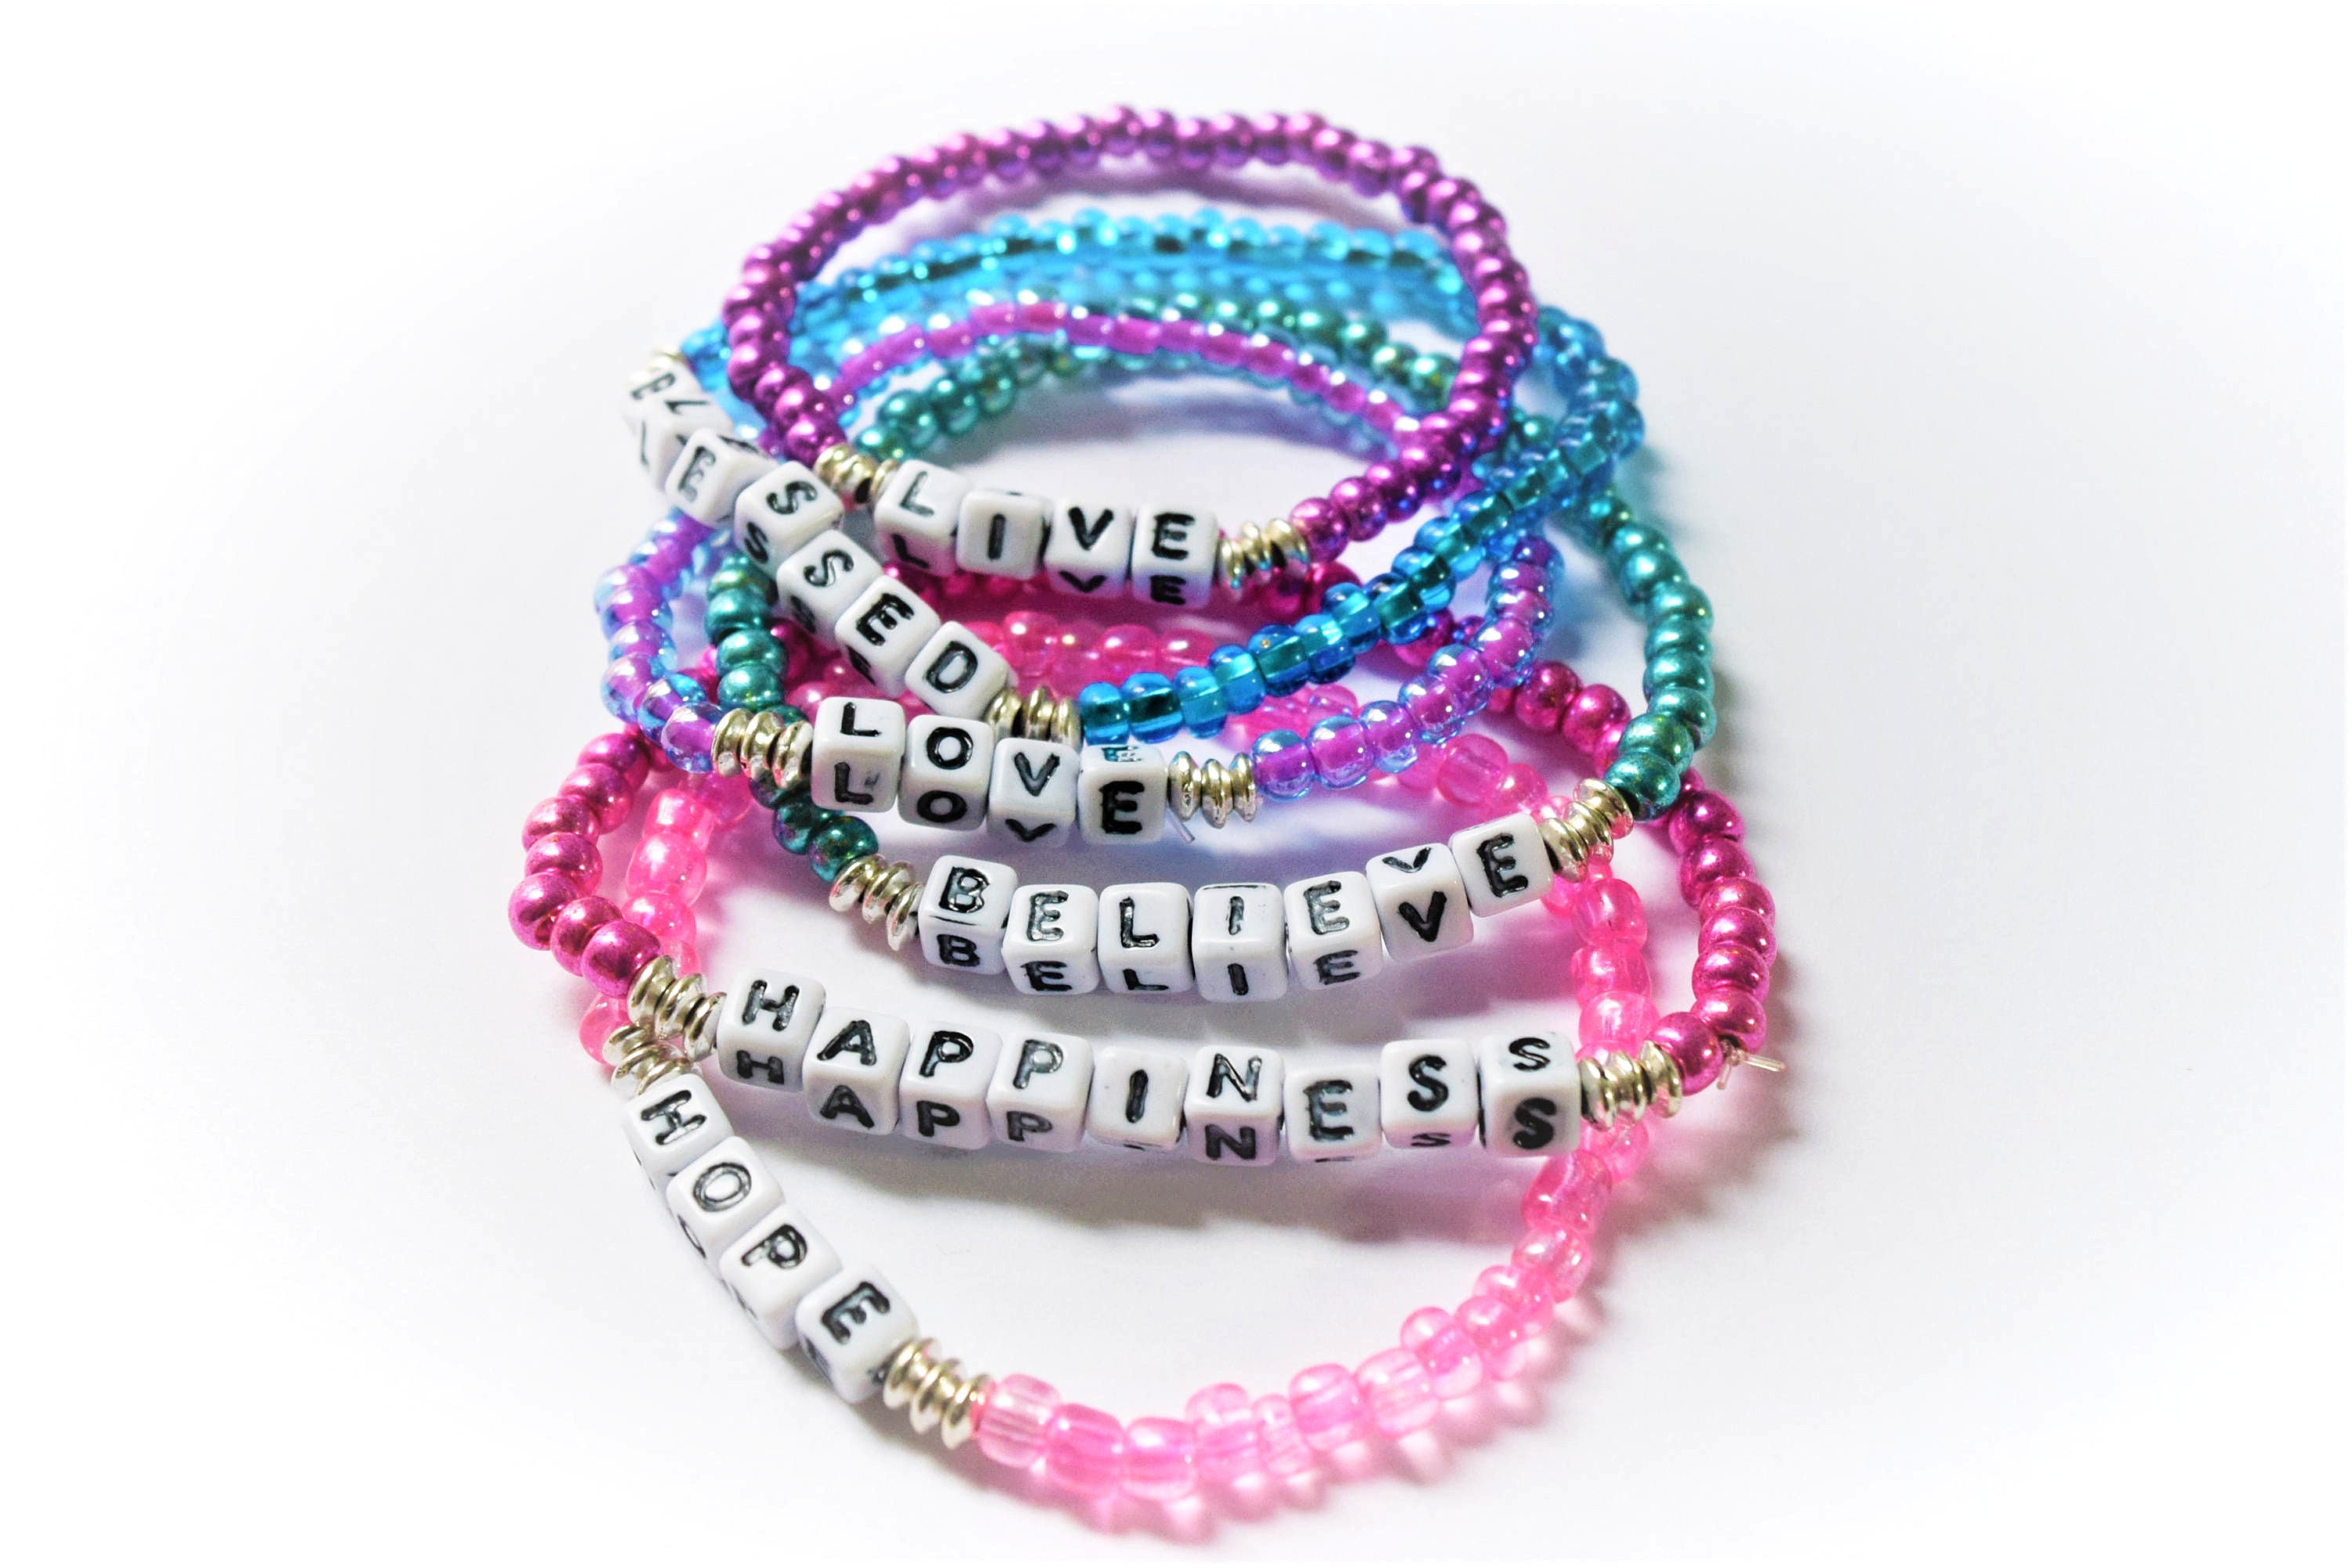 Inspiration Bracelet / Inspirational Words Bracelet / Badass Bracelet /  Word Bracelet / Custom Word Bracelet / Fierce Bracelet 